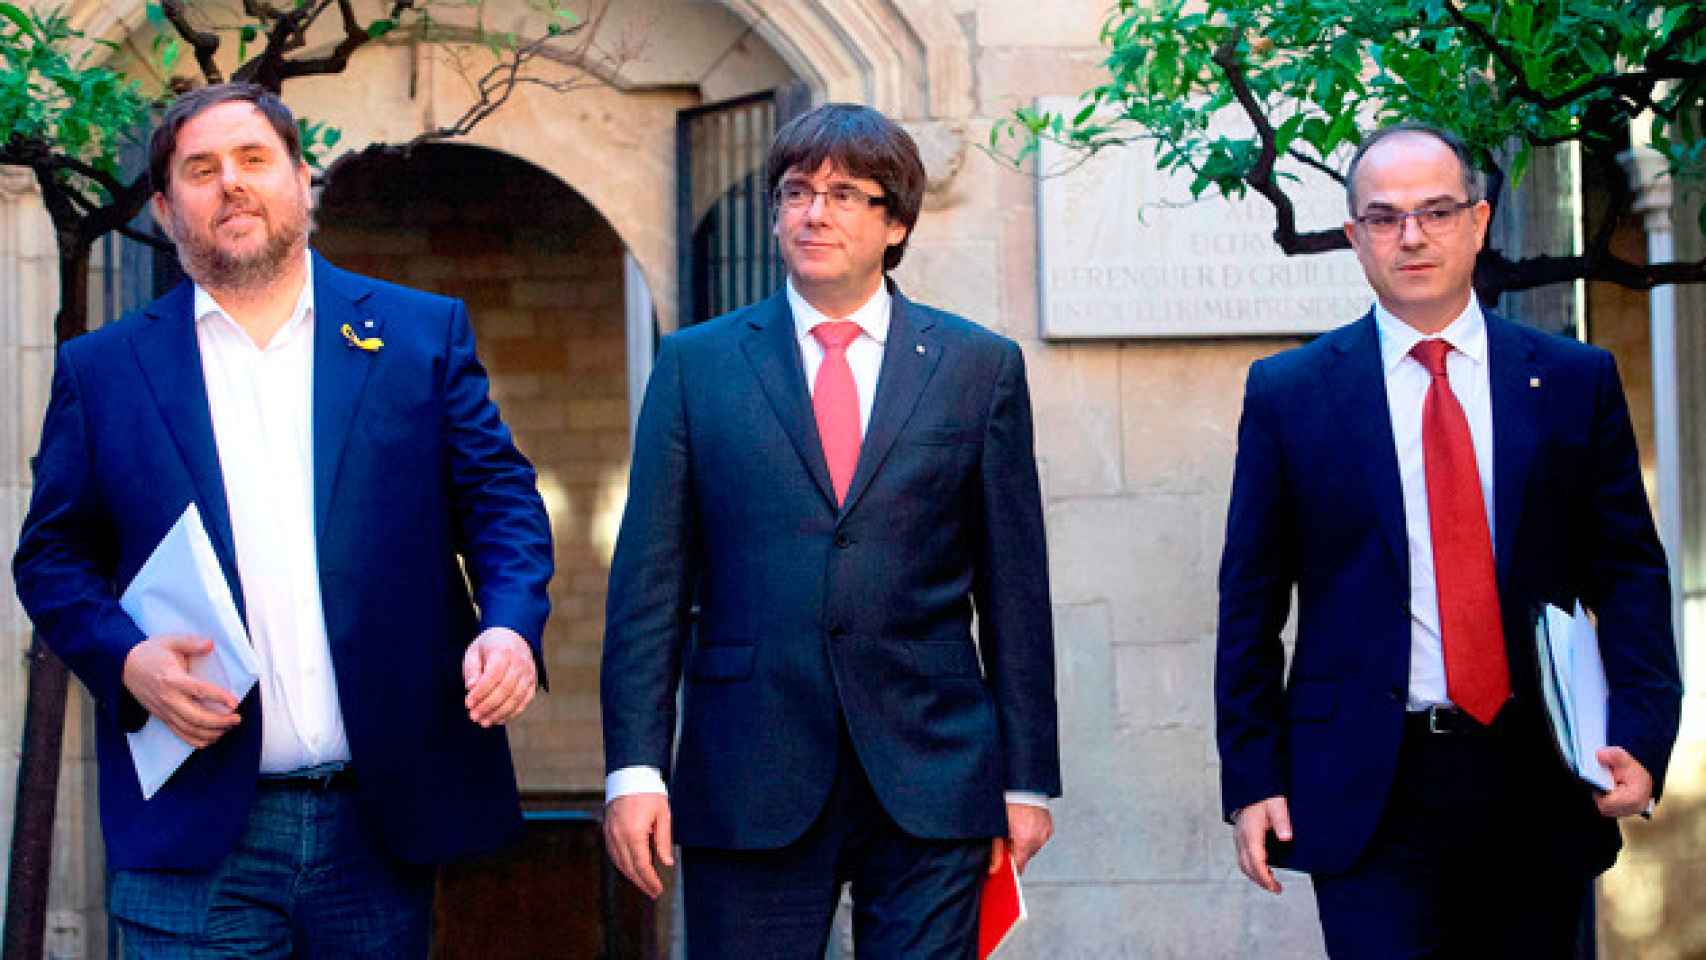 El presidente de la Generalitat, Carles Puigdemont, el vicepresidente, Oriol Junqueras (i), y el conseller de Presidencia, Jordi Turull (d), a su llegada a la reunión semanal del gobierno catalán / EFE